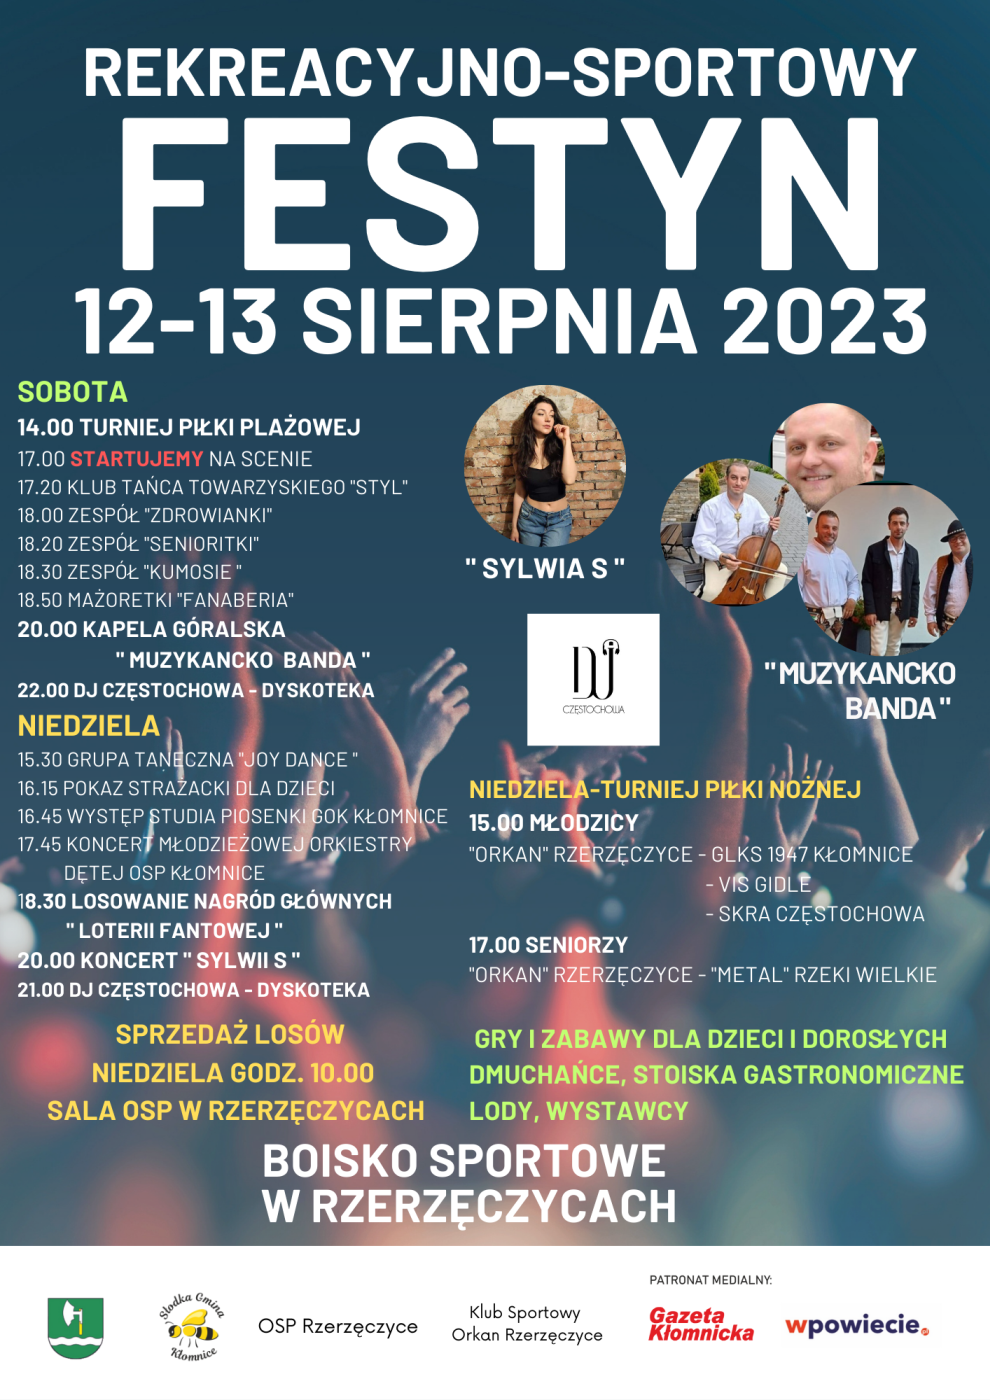 Festyn rekreacyjno-sportowy 12-13 sierpnia 2023 na boisku w Rzerzęczycach 